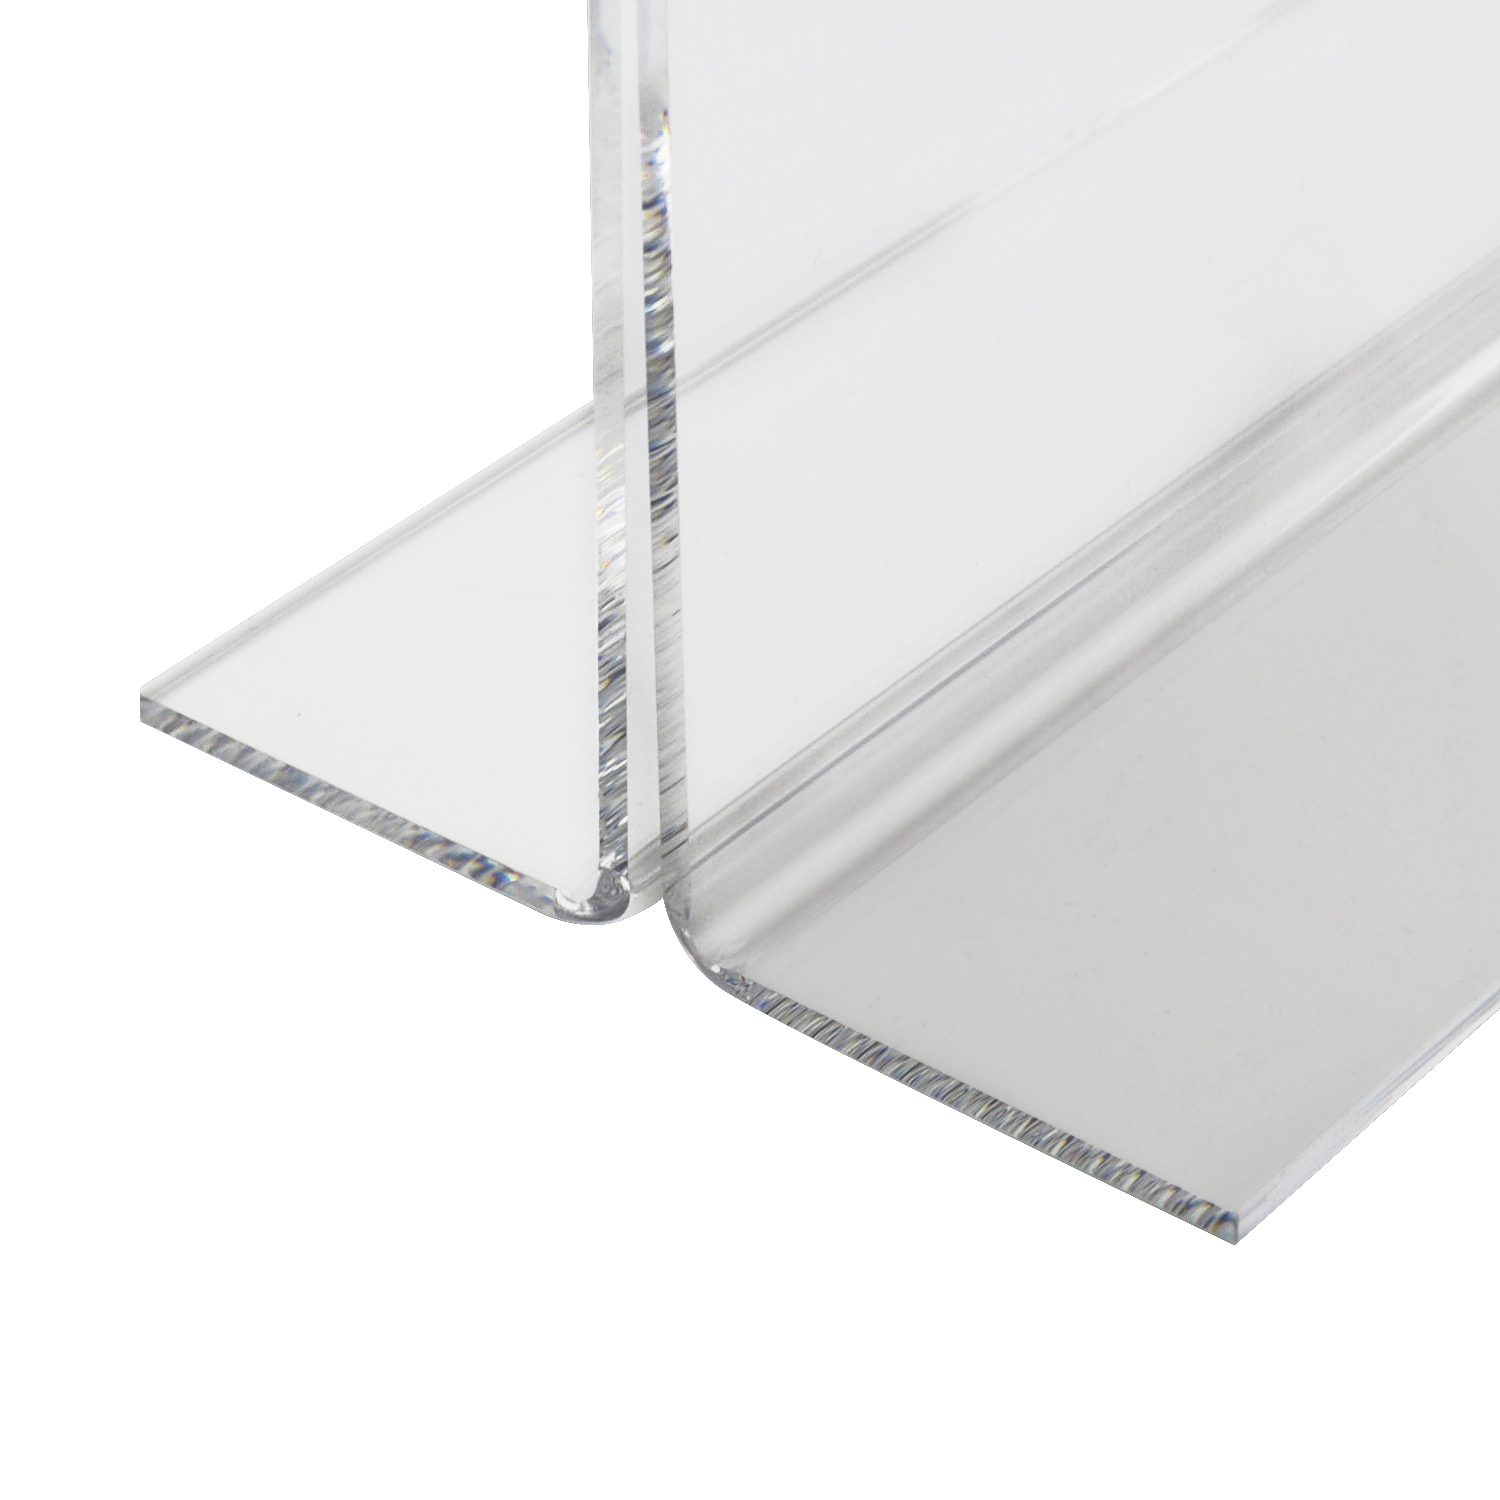 Tischaufsteller oder Menükarte aus Acryl für DIN A4 im Querformat von HMF mit den Maßen 30 x 22.2 x 10 cm